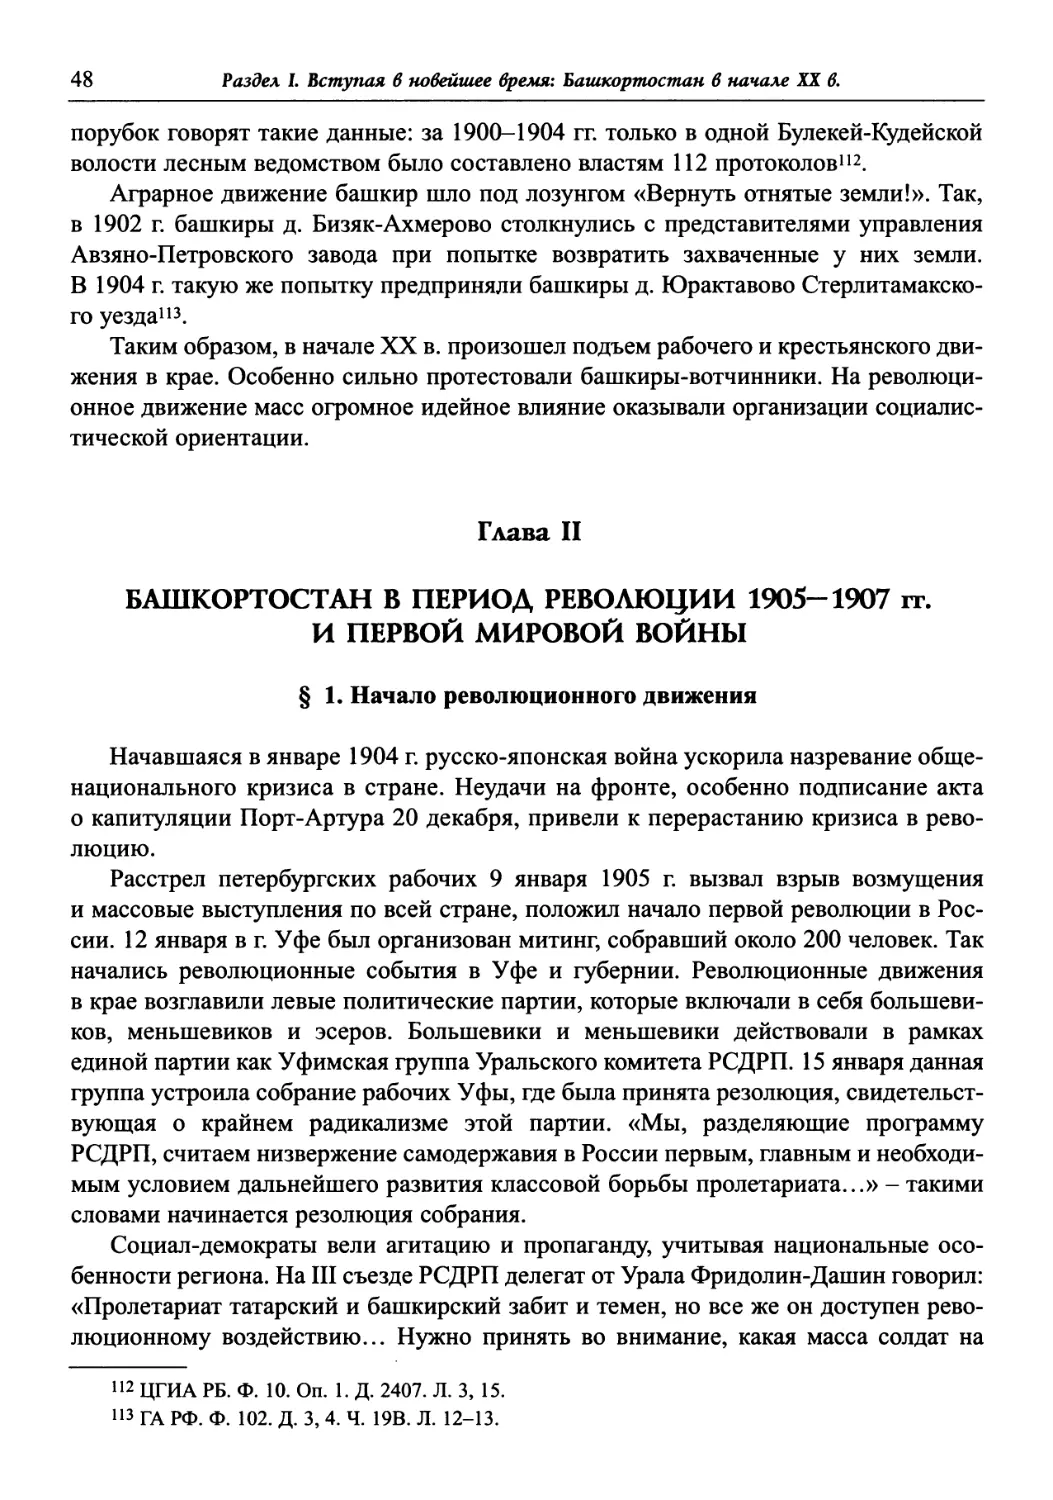 Глава II. Башкортостан в период революции 1905-1907 гг. и Первой мировой войны